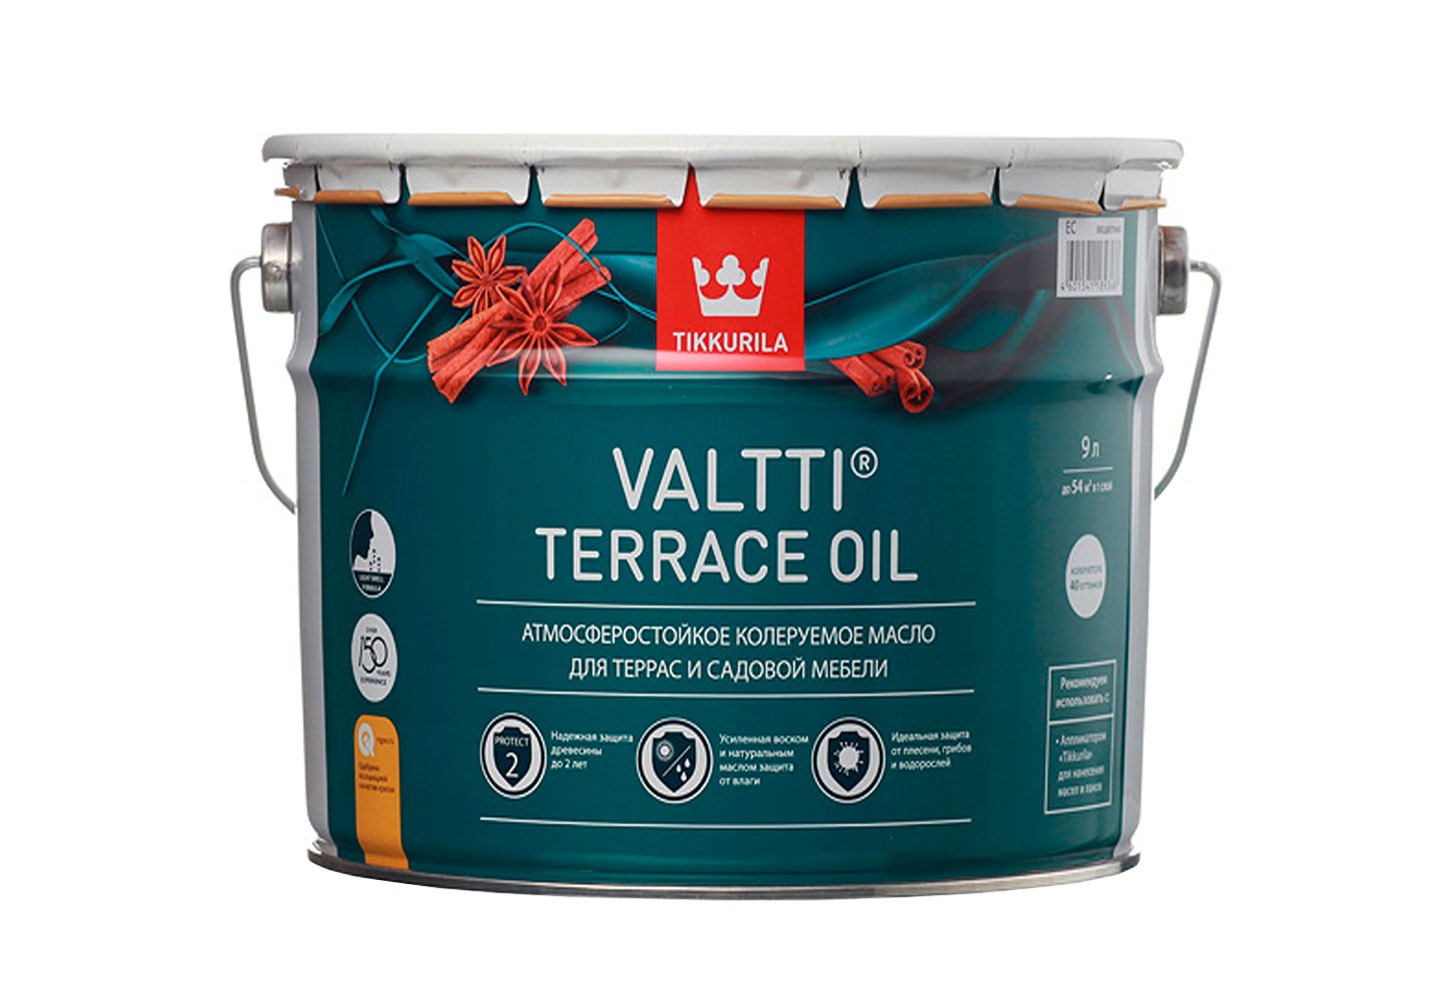 Масло Valtti Terrace Oil содержит добавки, которые защищают древесину от плесени, грибков и водорослей.